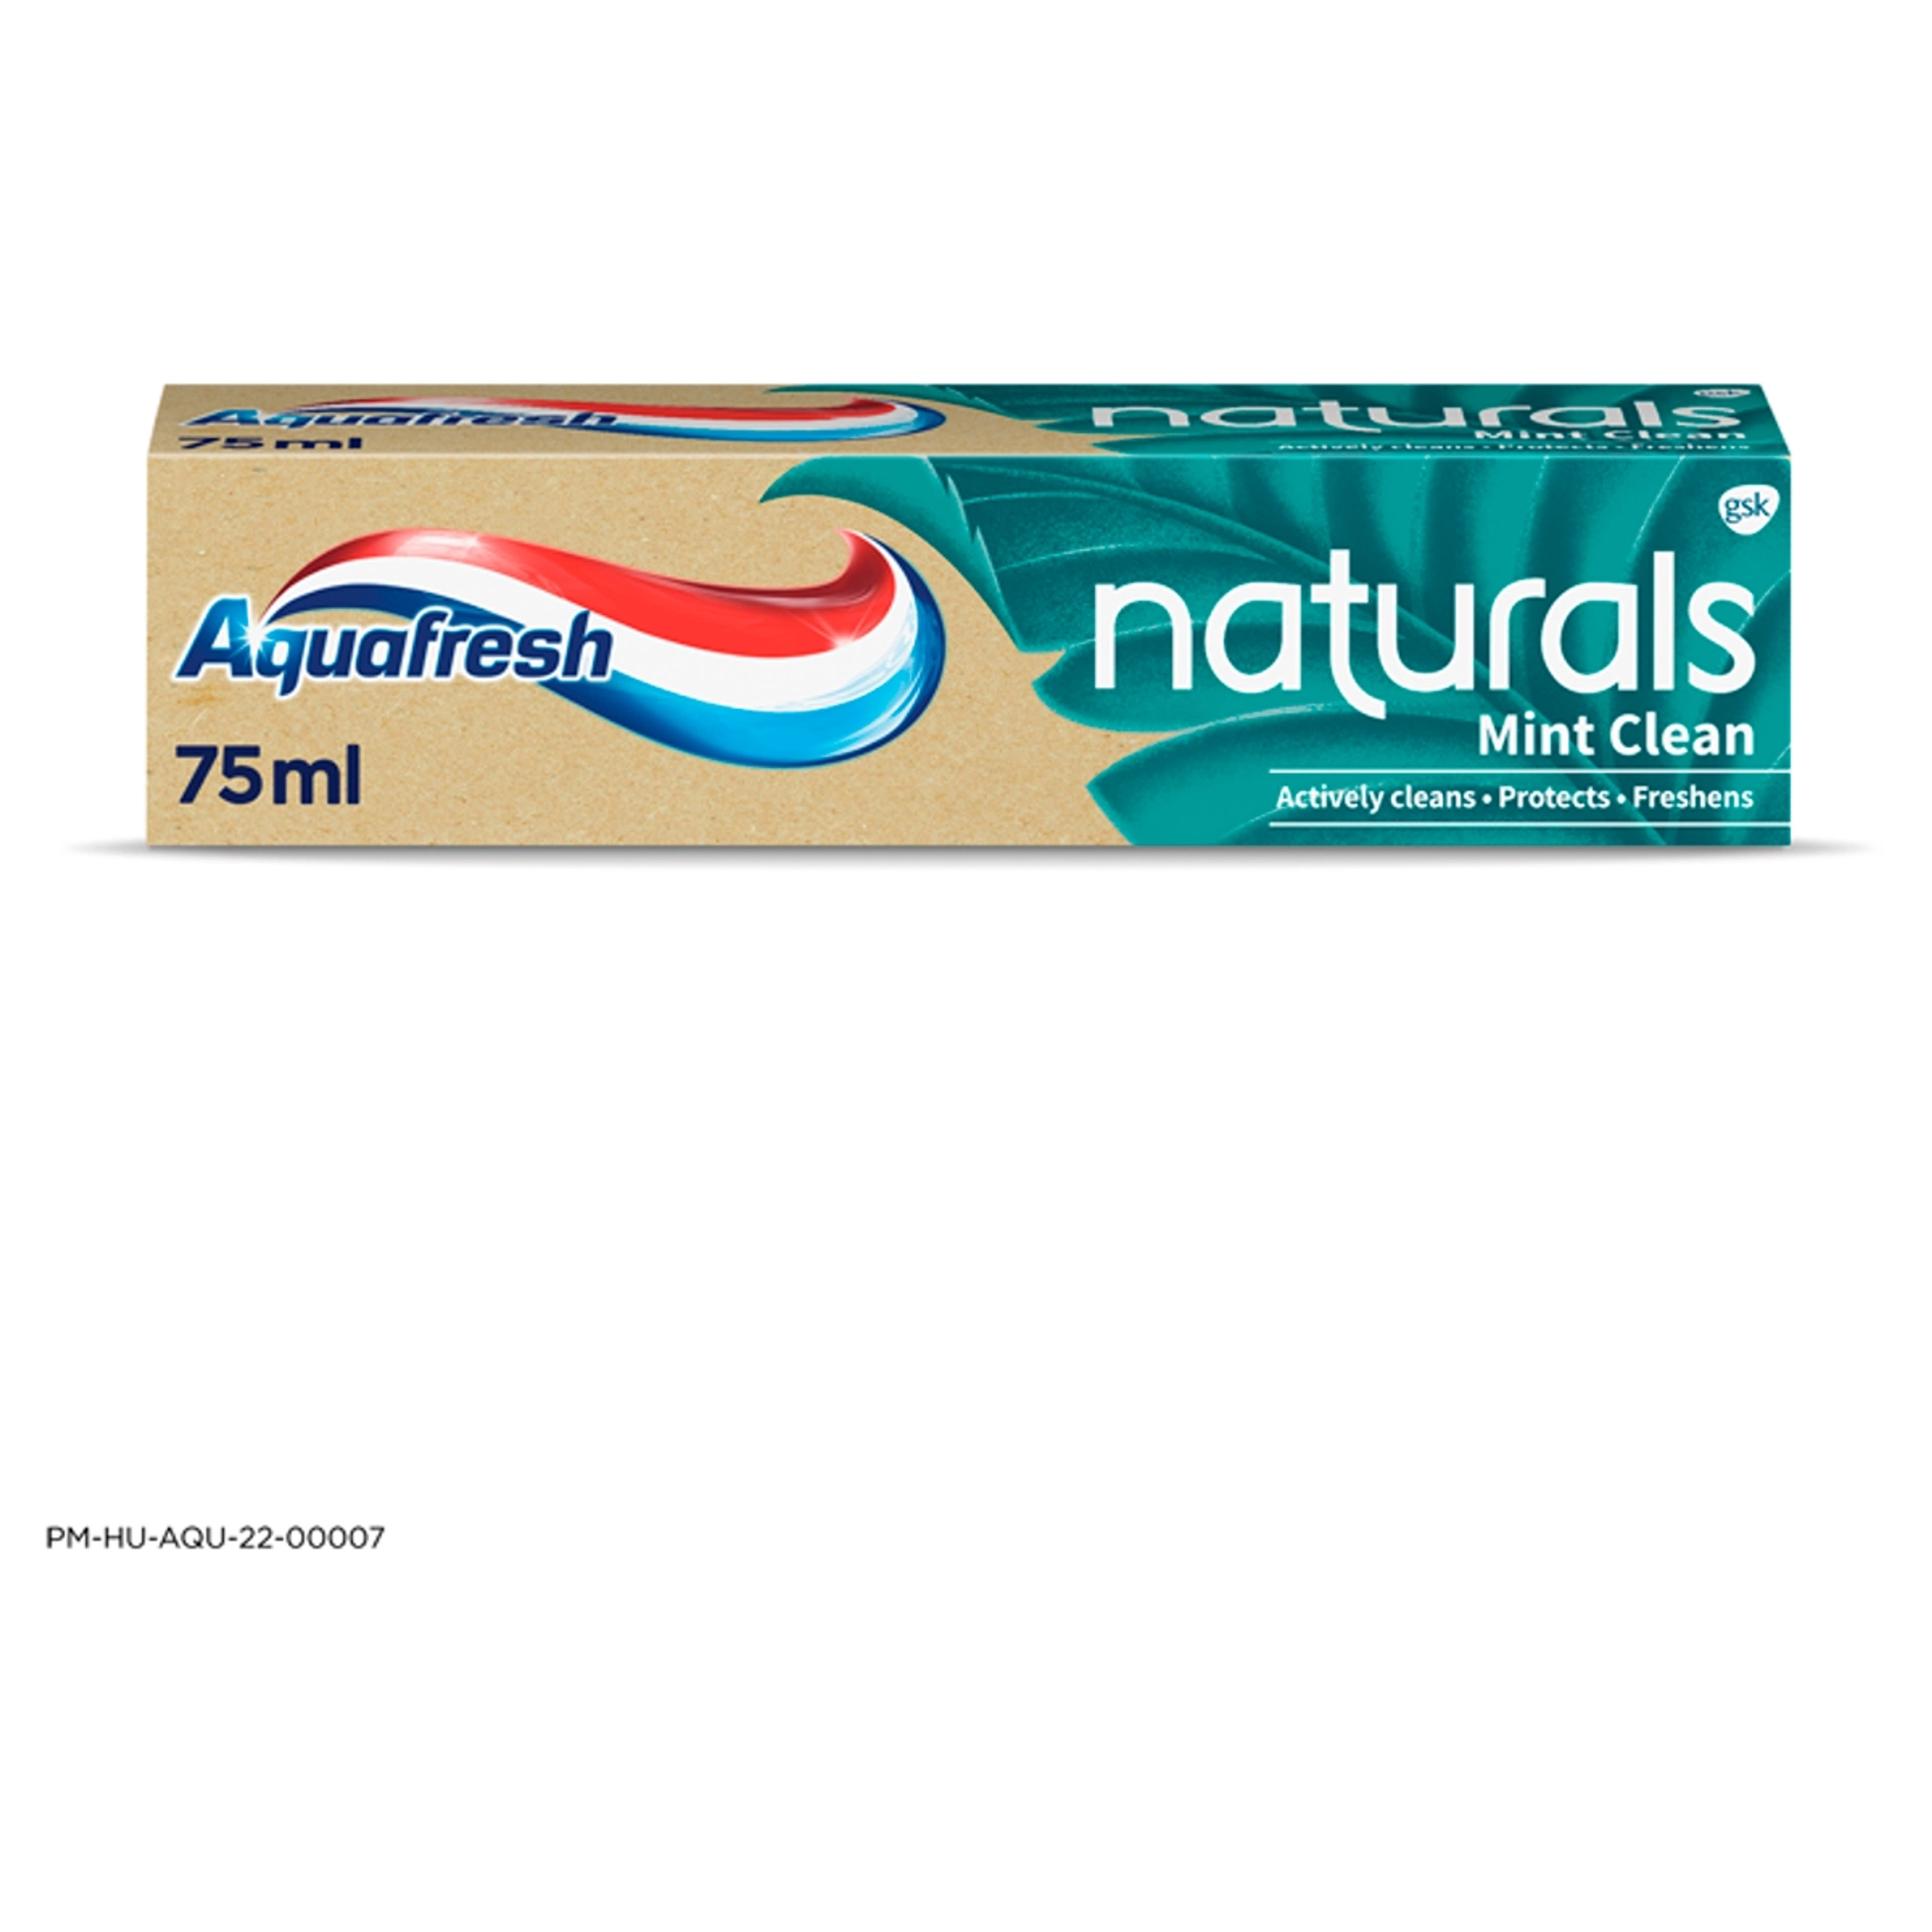 Aquafresh Naturals Mint Clean fogkrém - 75 ml